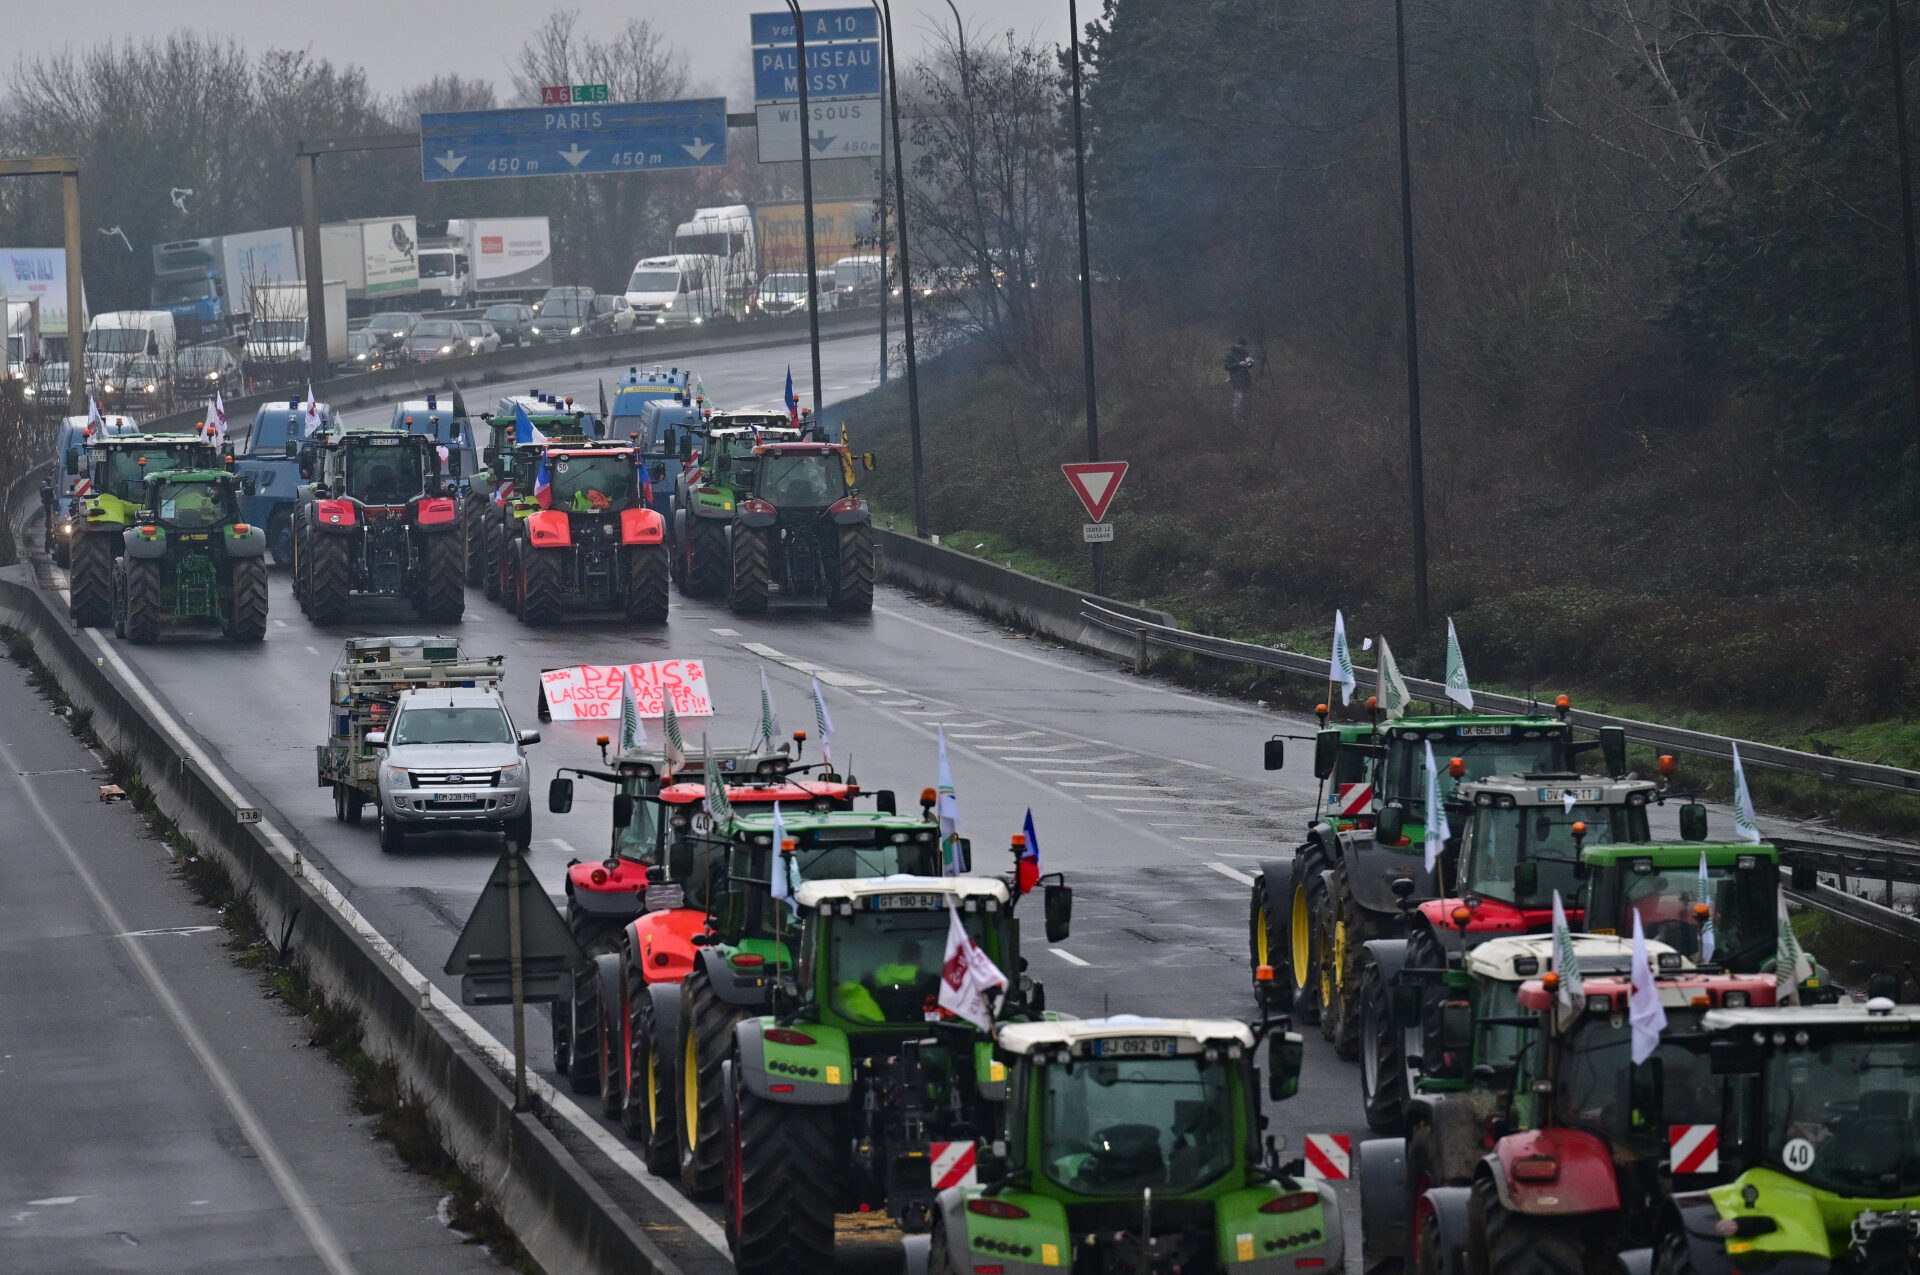 Bondeprotesterna i Frankrike påverkar lastbilschaufförers säkerhet samt den fria rörligheten av gods, menar IRU. Foto: IRU.